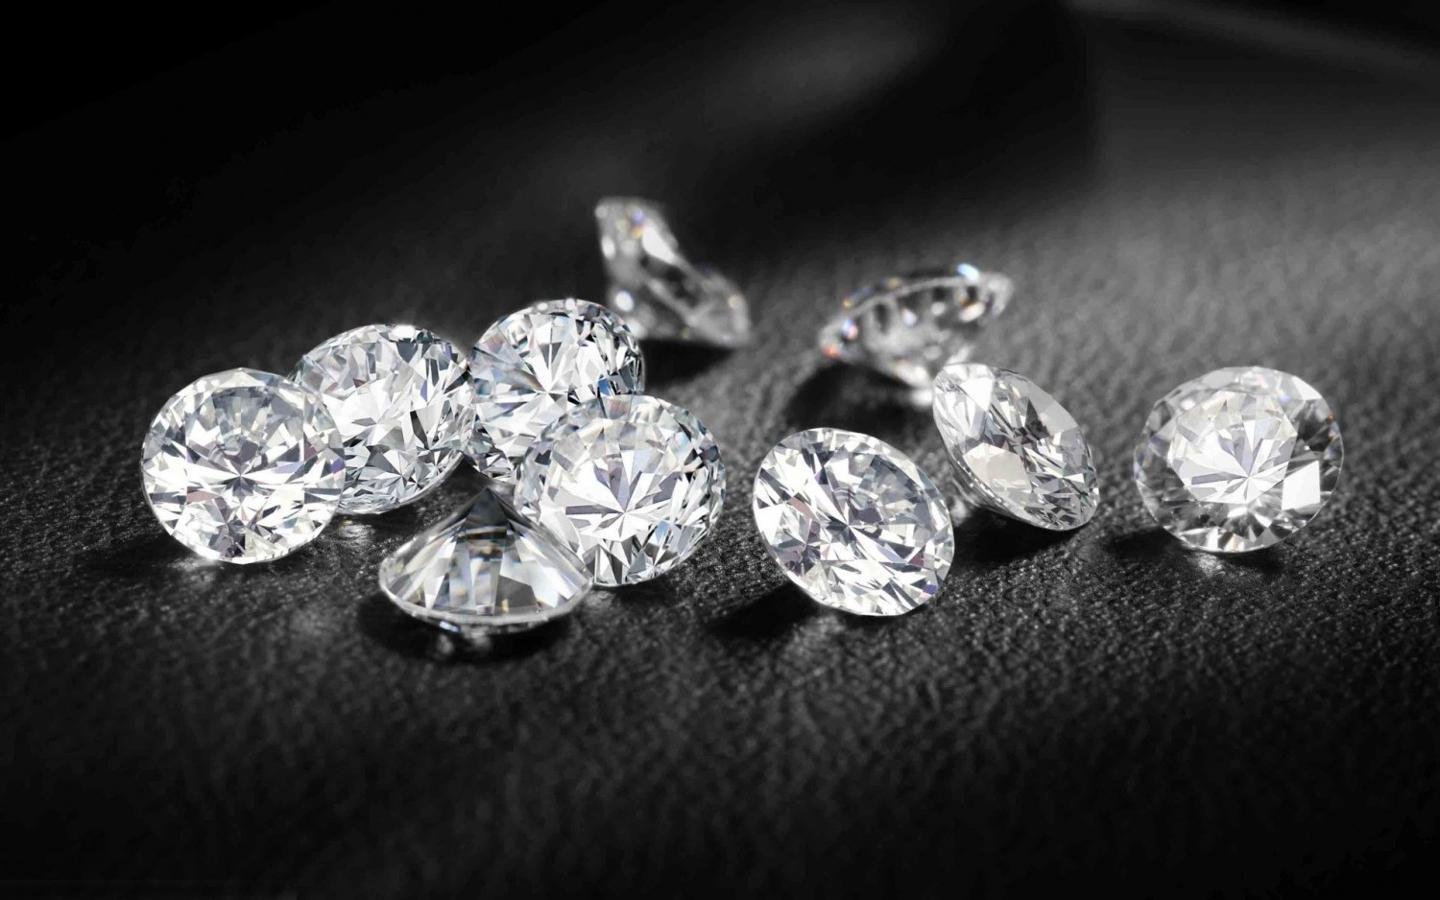 购买钻石是睿智的投资